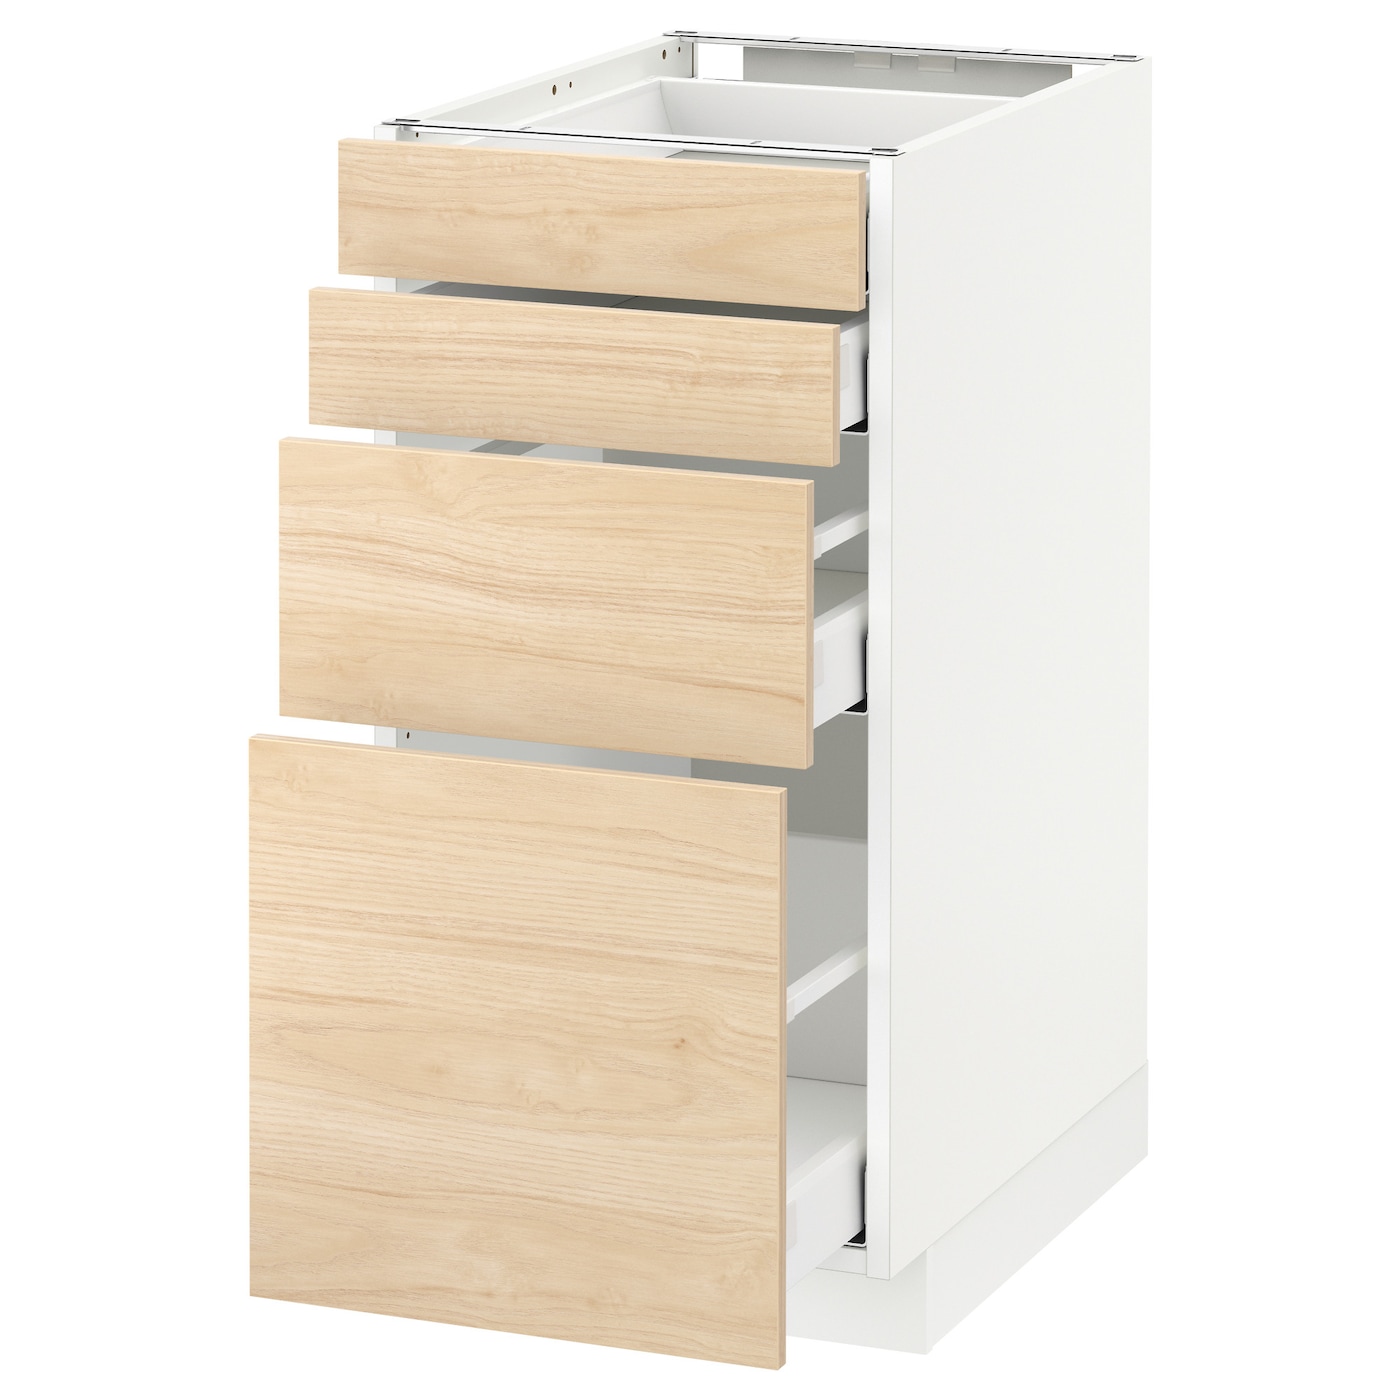 Напольный кухонный шкаф  - IKEA METOD MAXIMERA, 88x62x40см, белый/светлый ясень, МЕТОД МАКСИМЕРА ИКЕА